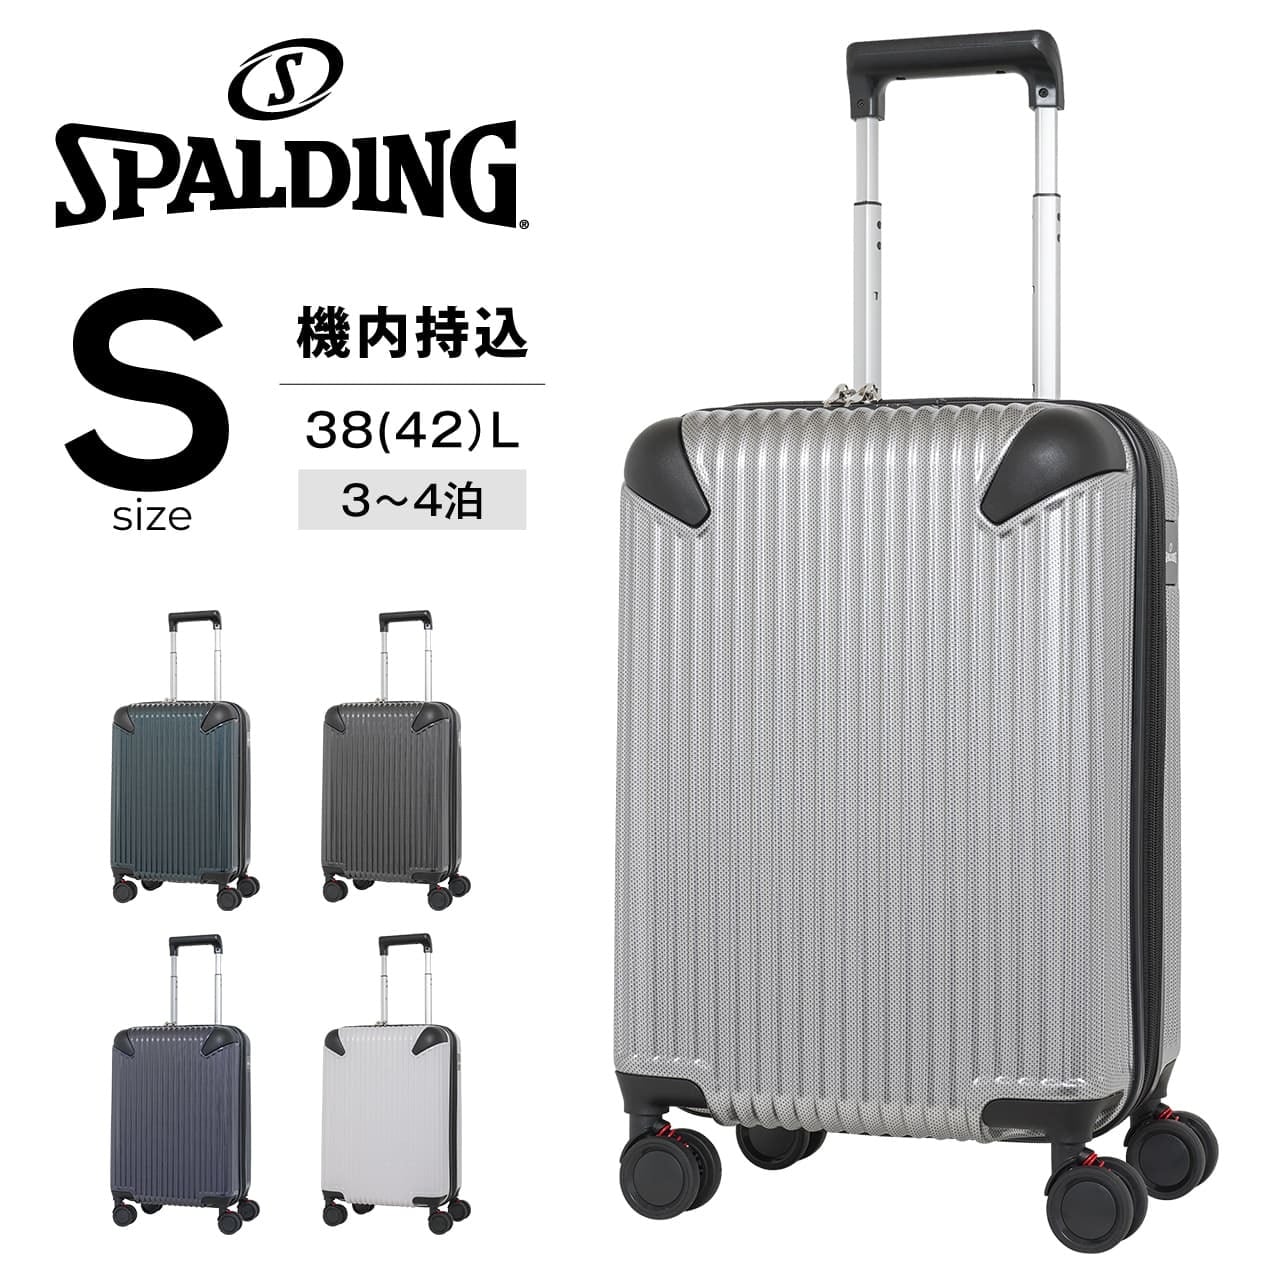 SPALDING スーツケース Sサイズ サスペンション付き キャリーケース ...